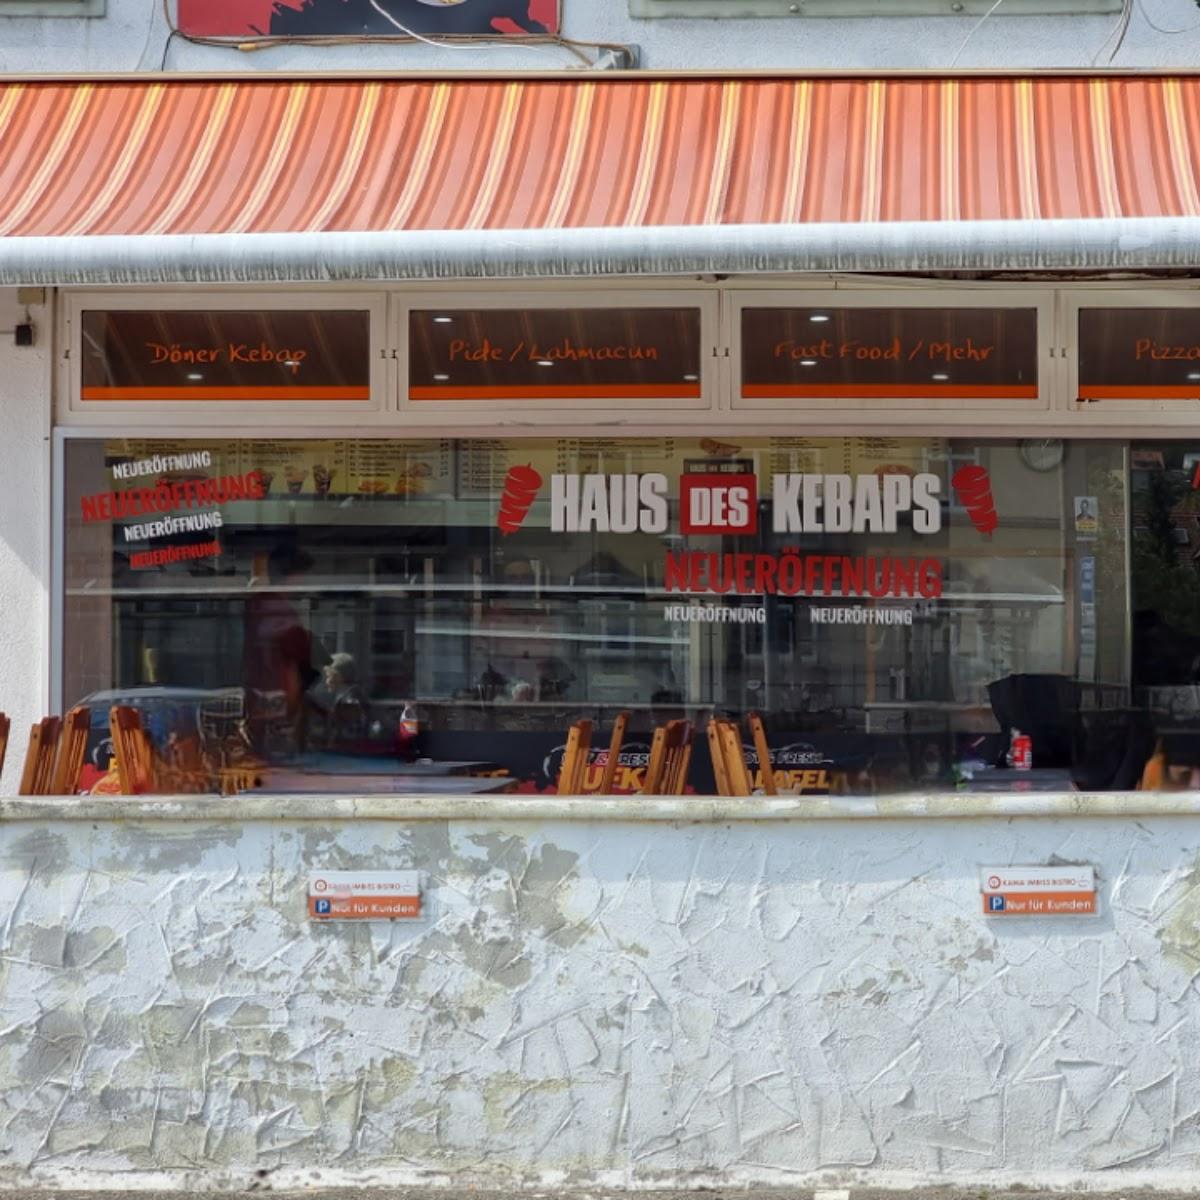 Restaurant "Haus des Kebaps" in Lörrach